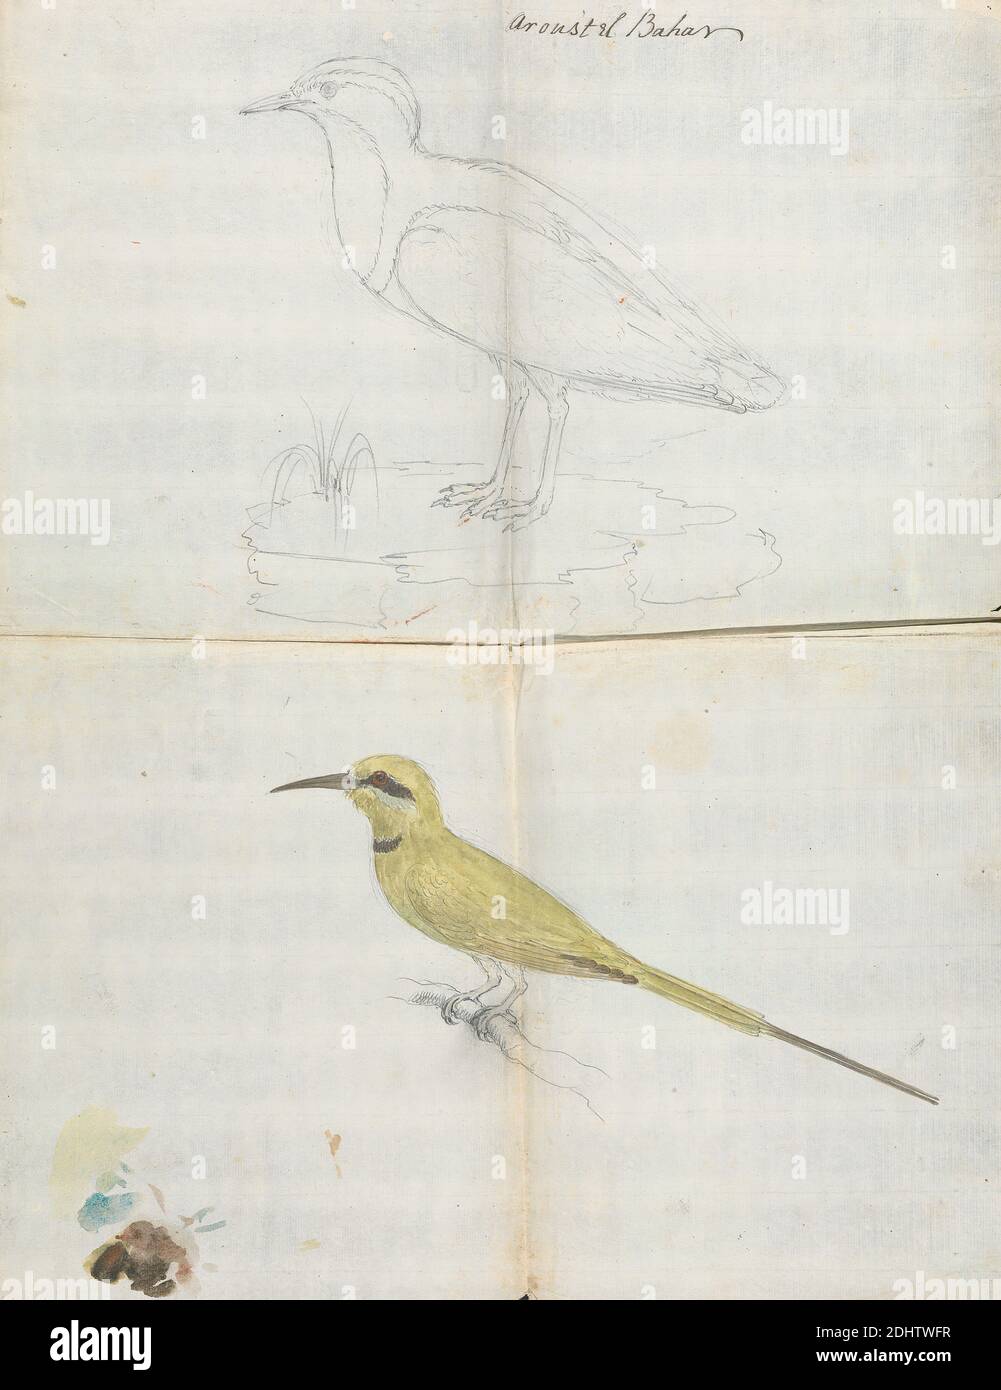 2 oiseaux 'Aroust el Bahar', Luigi Balugani, 1737–1770, italien, ca. 1768, Graphite et aquarelle sur papier crème, moyen, légèrement texturé, feuille: 17 3/8 × 13 1/2 pouces (44.1 × 34.3 cm), art animal Banque D'Images